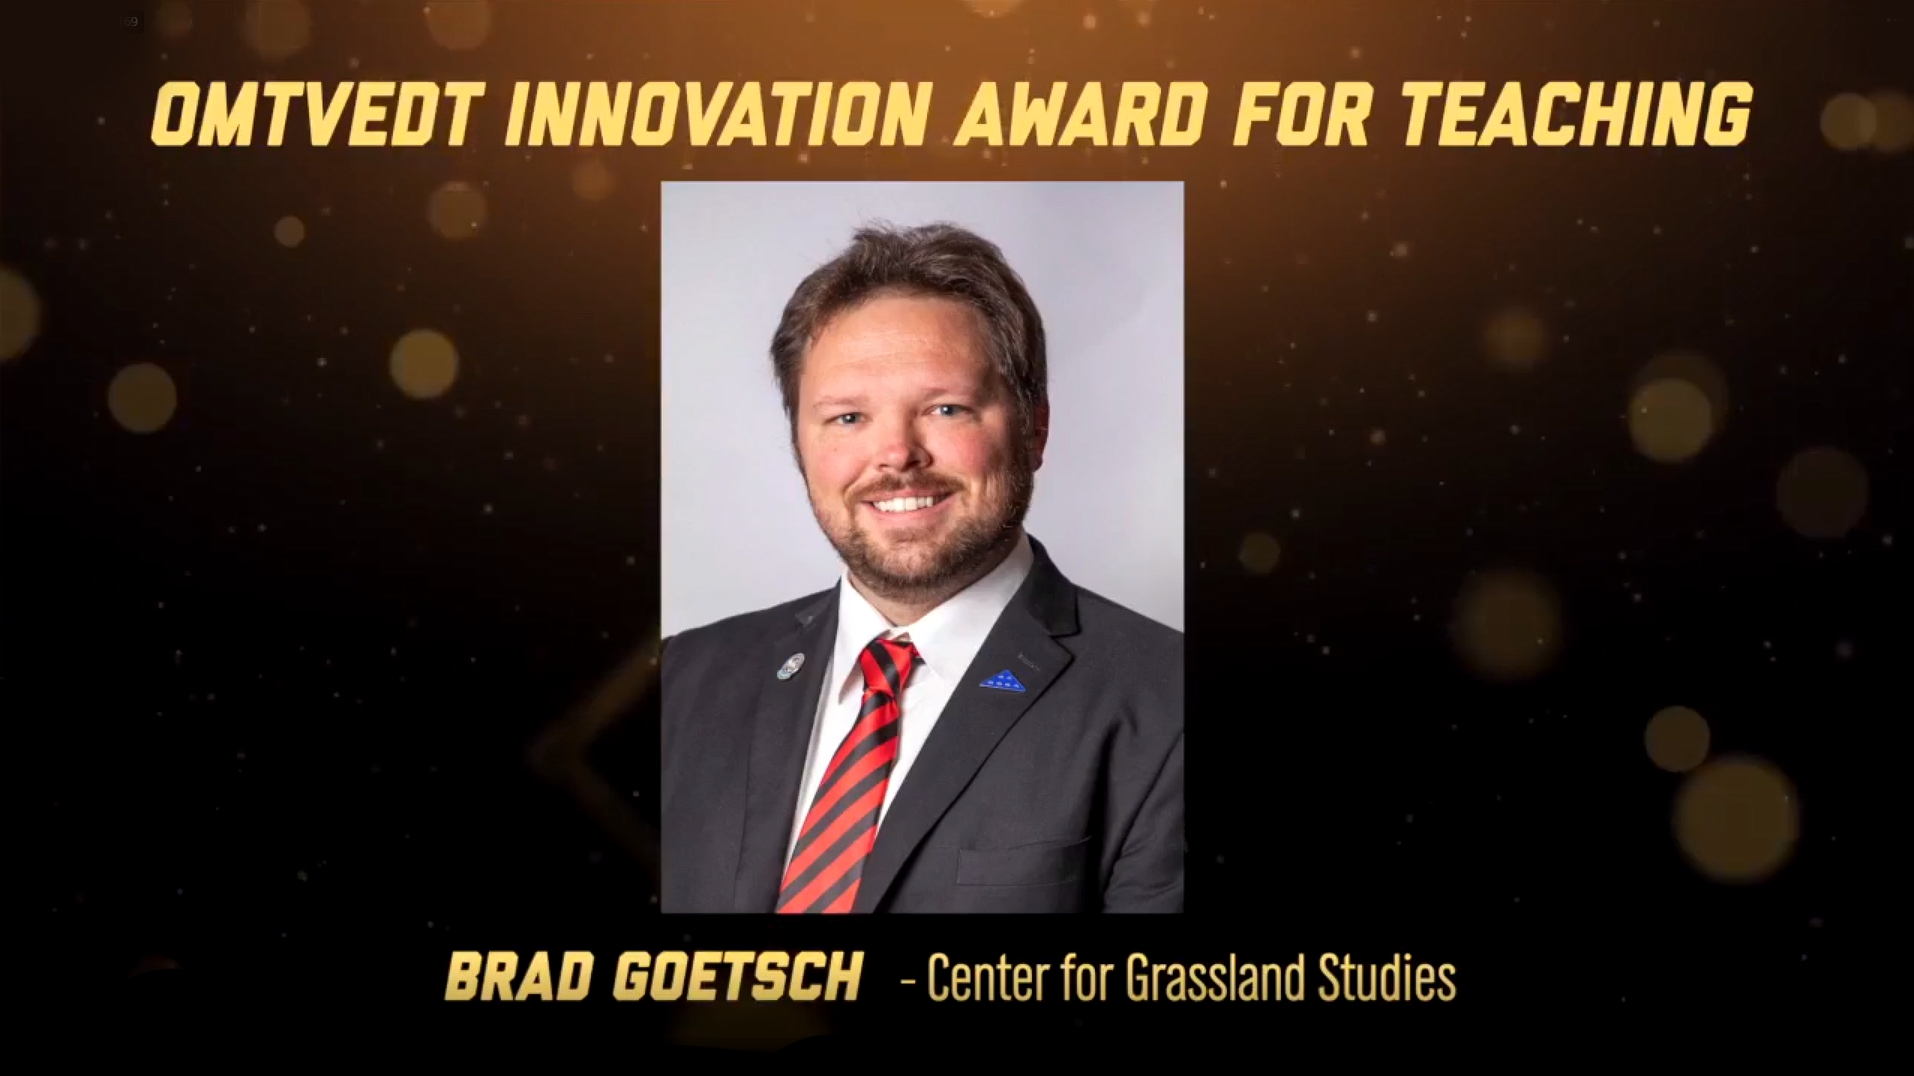 Brad Goetsch Wins Omtvedt Innovation Award for Teaching